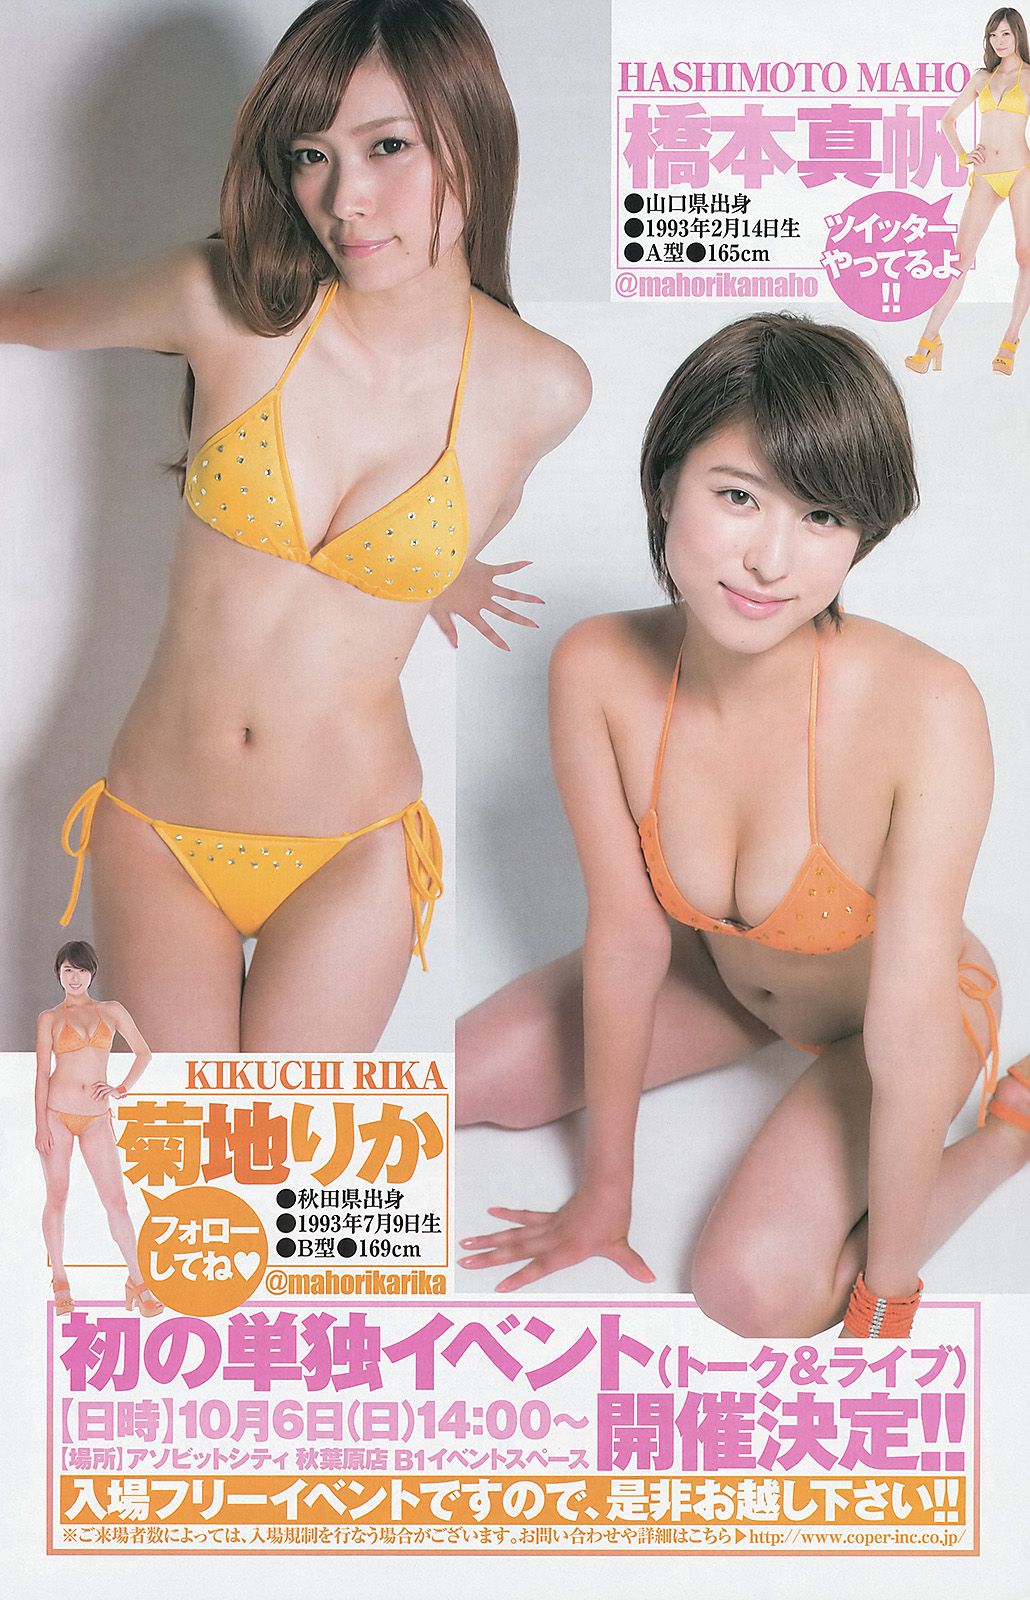 柏木由紀 まほりか(仮) 瑞稀もえ [Weekly Young Jump] 2013年No.43 写真杂志 第18页 No.c17dda